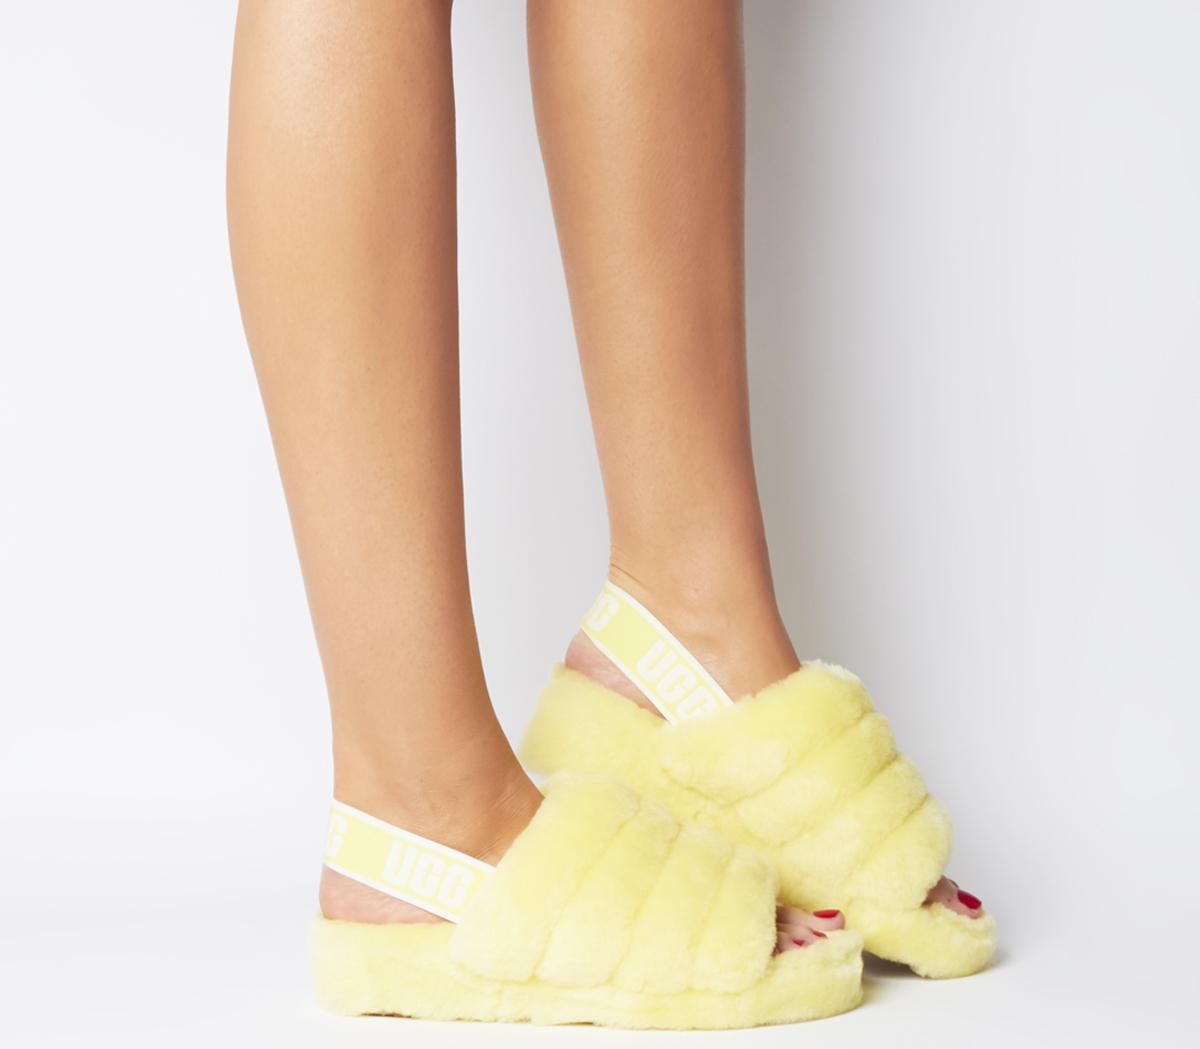 neon yellow slippers